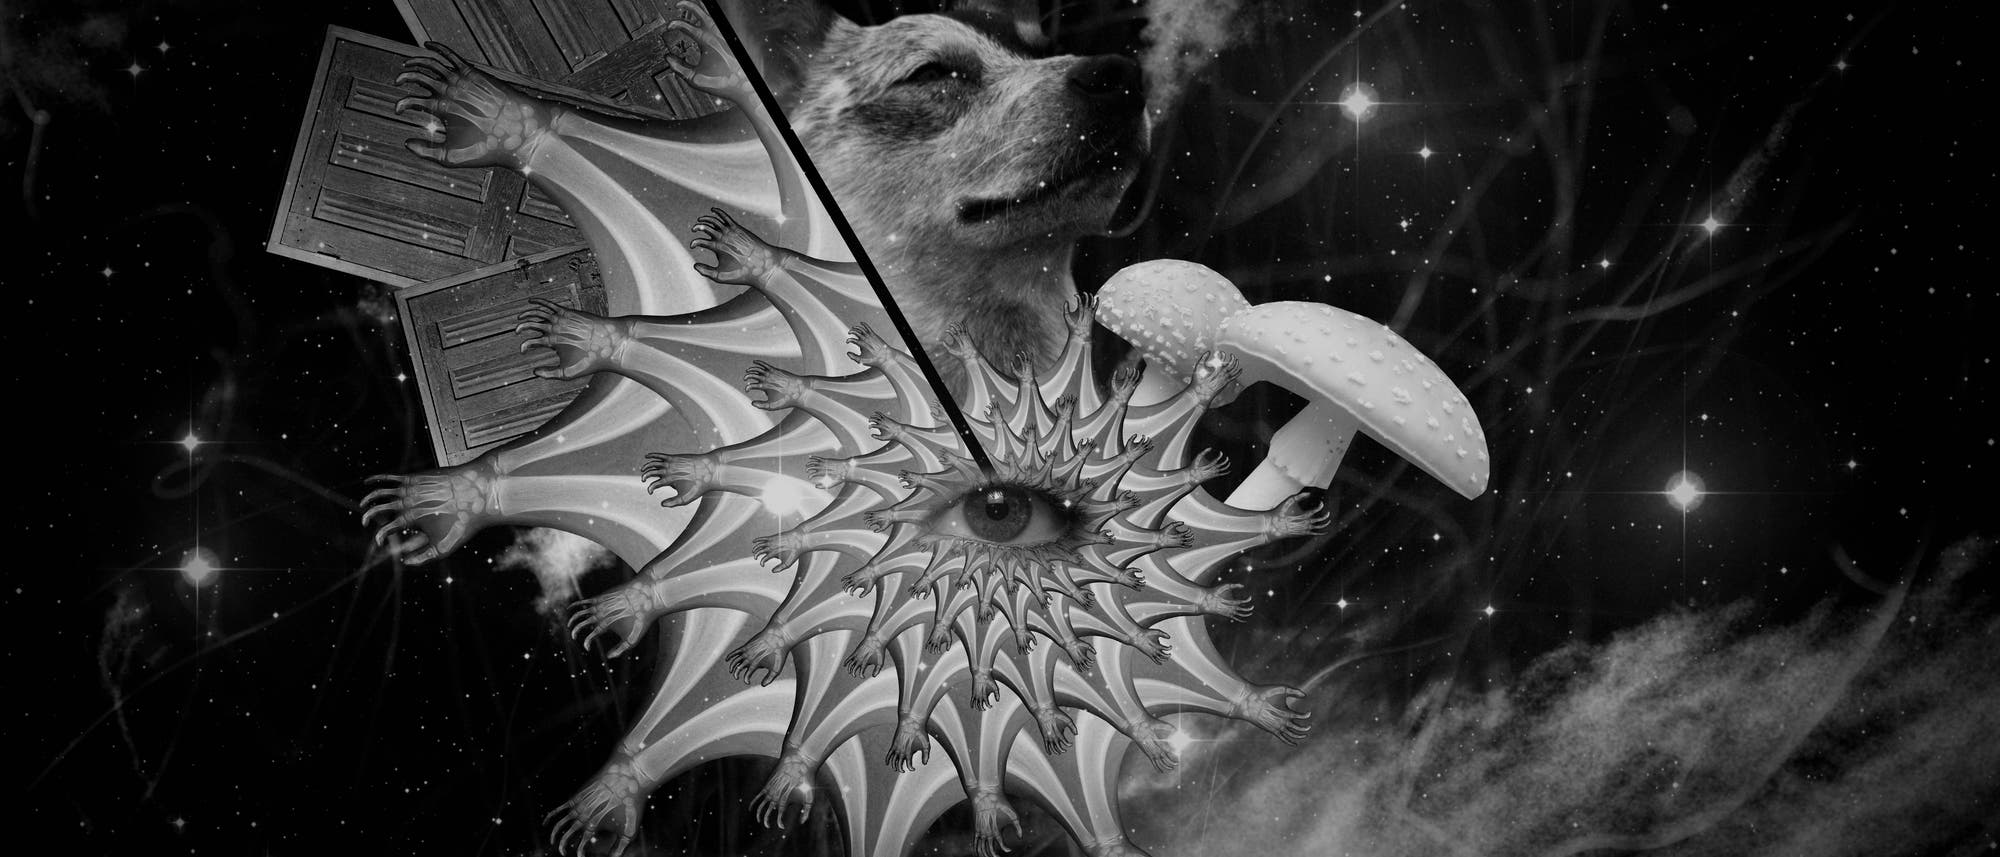 Schwarz-Weiß-Collage aus Pilzen, Auge, Tier und Türen, die eine psychedelische Erfahrung symbolisieren